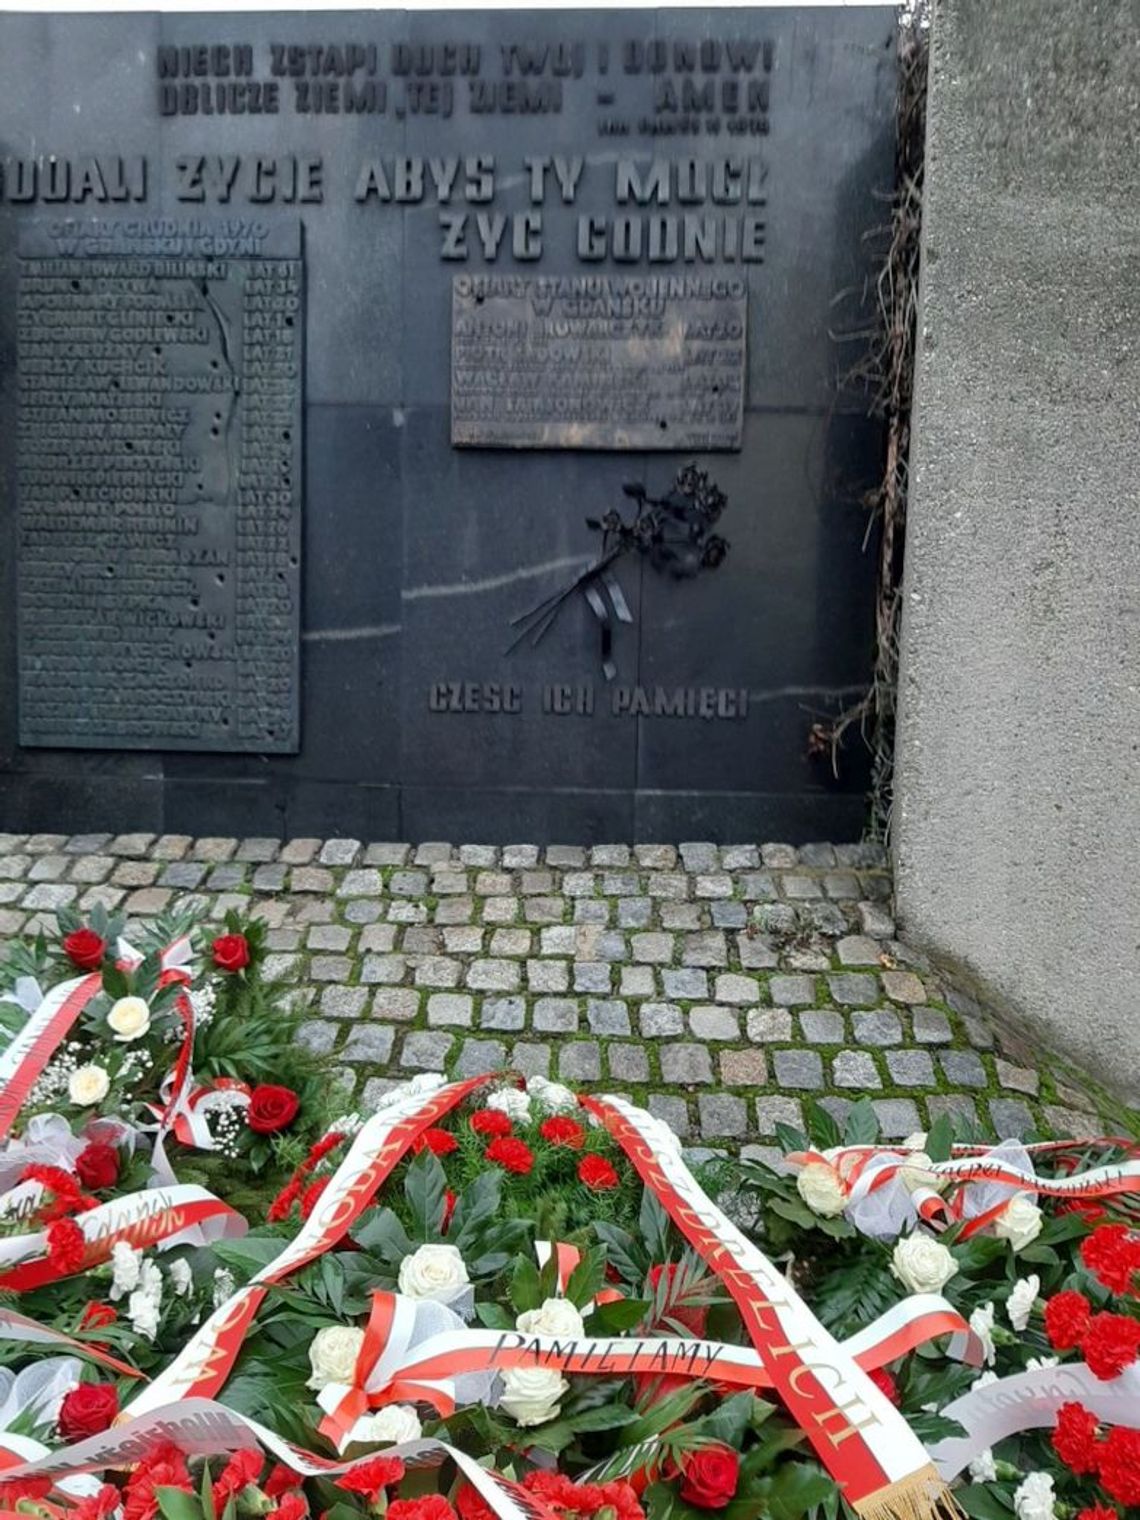 40 lat temu - zbrodnia. Dziś - kwiaty, wieńce i znicze ku pamięci ofiar represji stanu wojennego